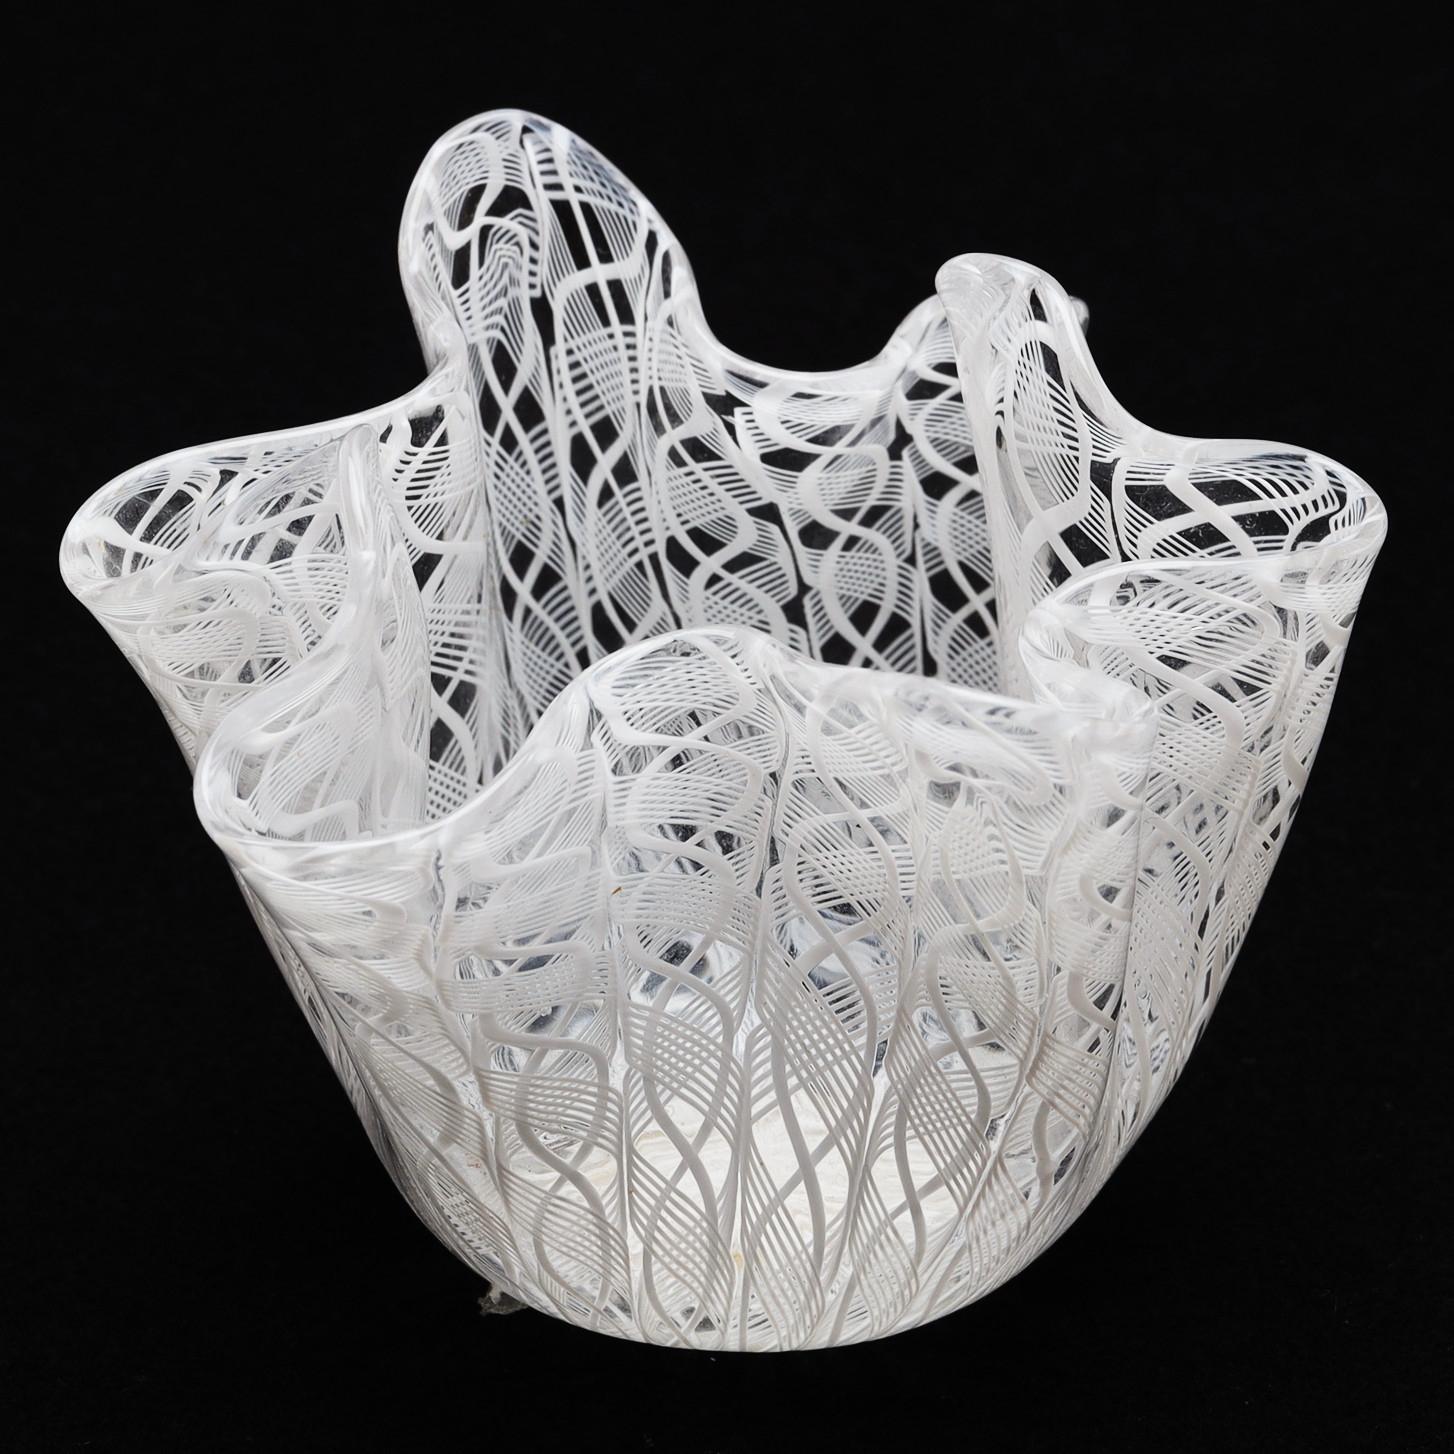 Taschentuch ''zanfirico''  Schale/Vase, Fulvio Bianconi für Venini, Murano, zugeschrieben. Diese Fazzoletto-Schale besteht aus Zanfirico-Glas mit vertikalem Gitter aus weißem Netz und weißen Bändern, einer Technik aus dem 16. Jahrhundert in Murano.